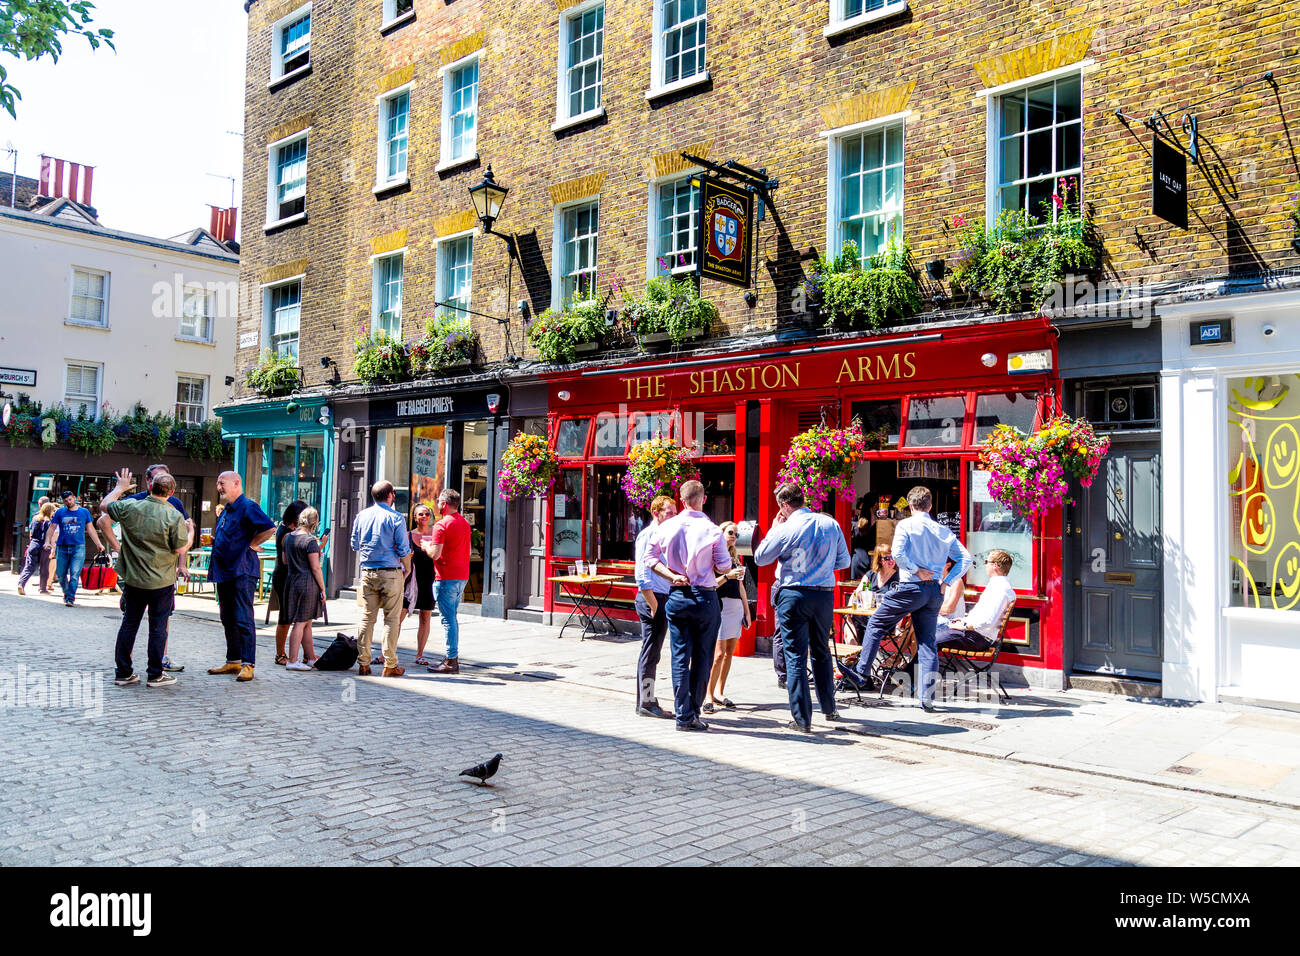 Die Leute trinken vor einem Pub in Soho, die Arme Shaston, London, UK Stockfoto